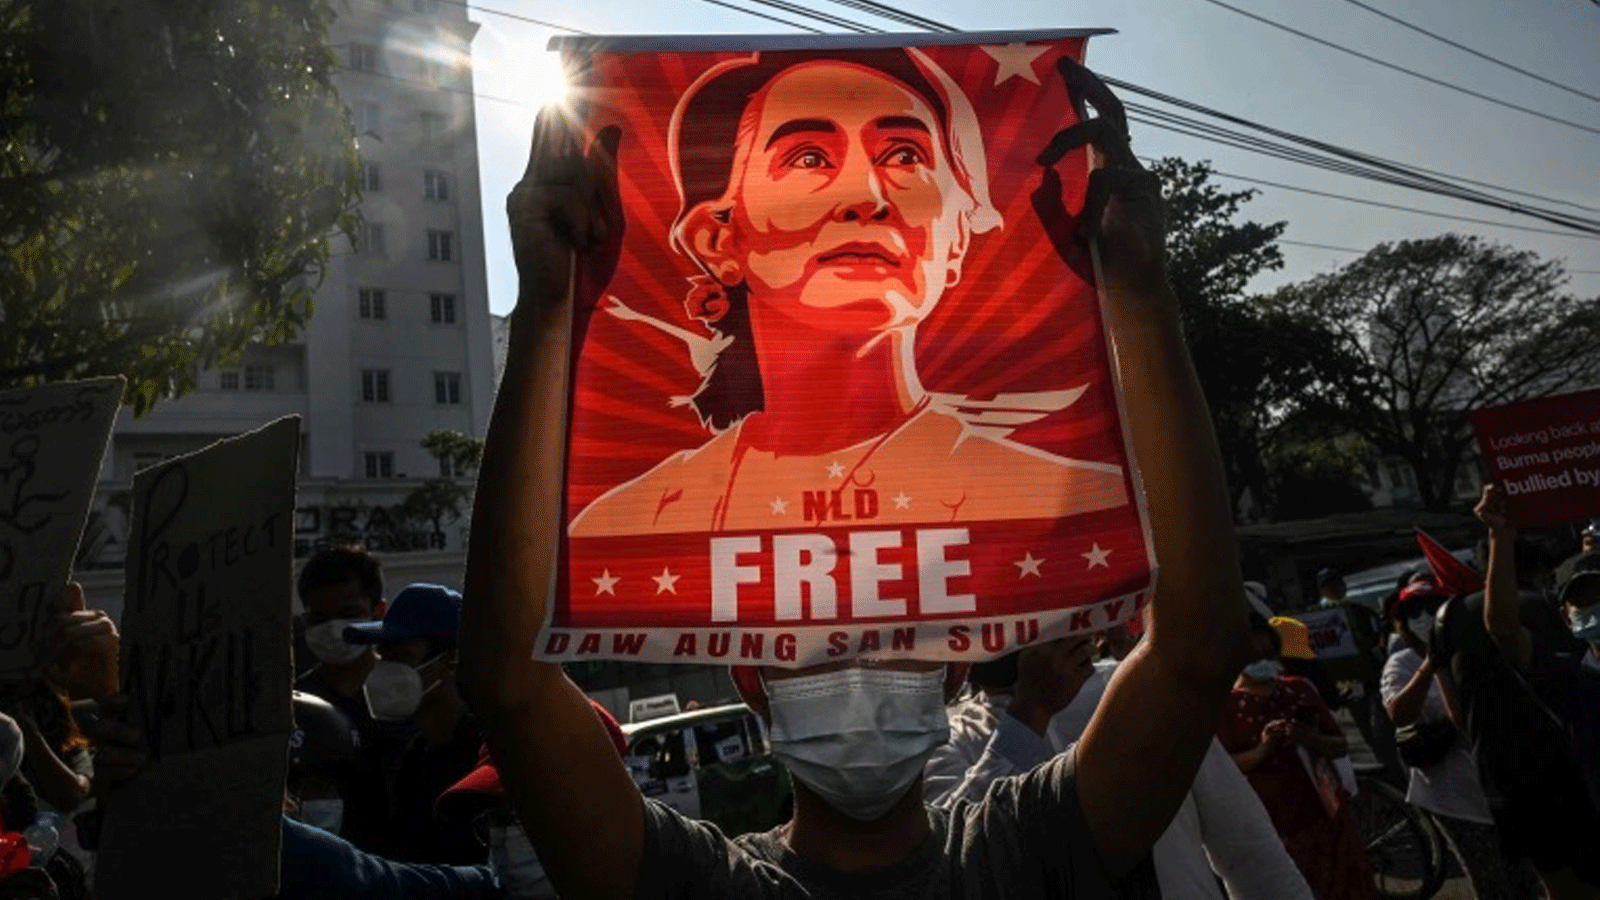 حُكم على أونغ سان سو كي بالسجن لمدة أربع سنوات بتهمة التحريض وخرق قيود فيروس كورونا في قضية وصفها أنصارها بأنها ذات دوافع سياسية